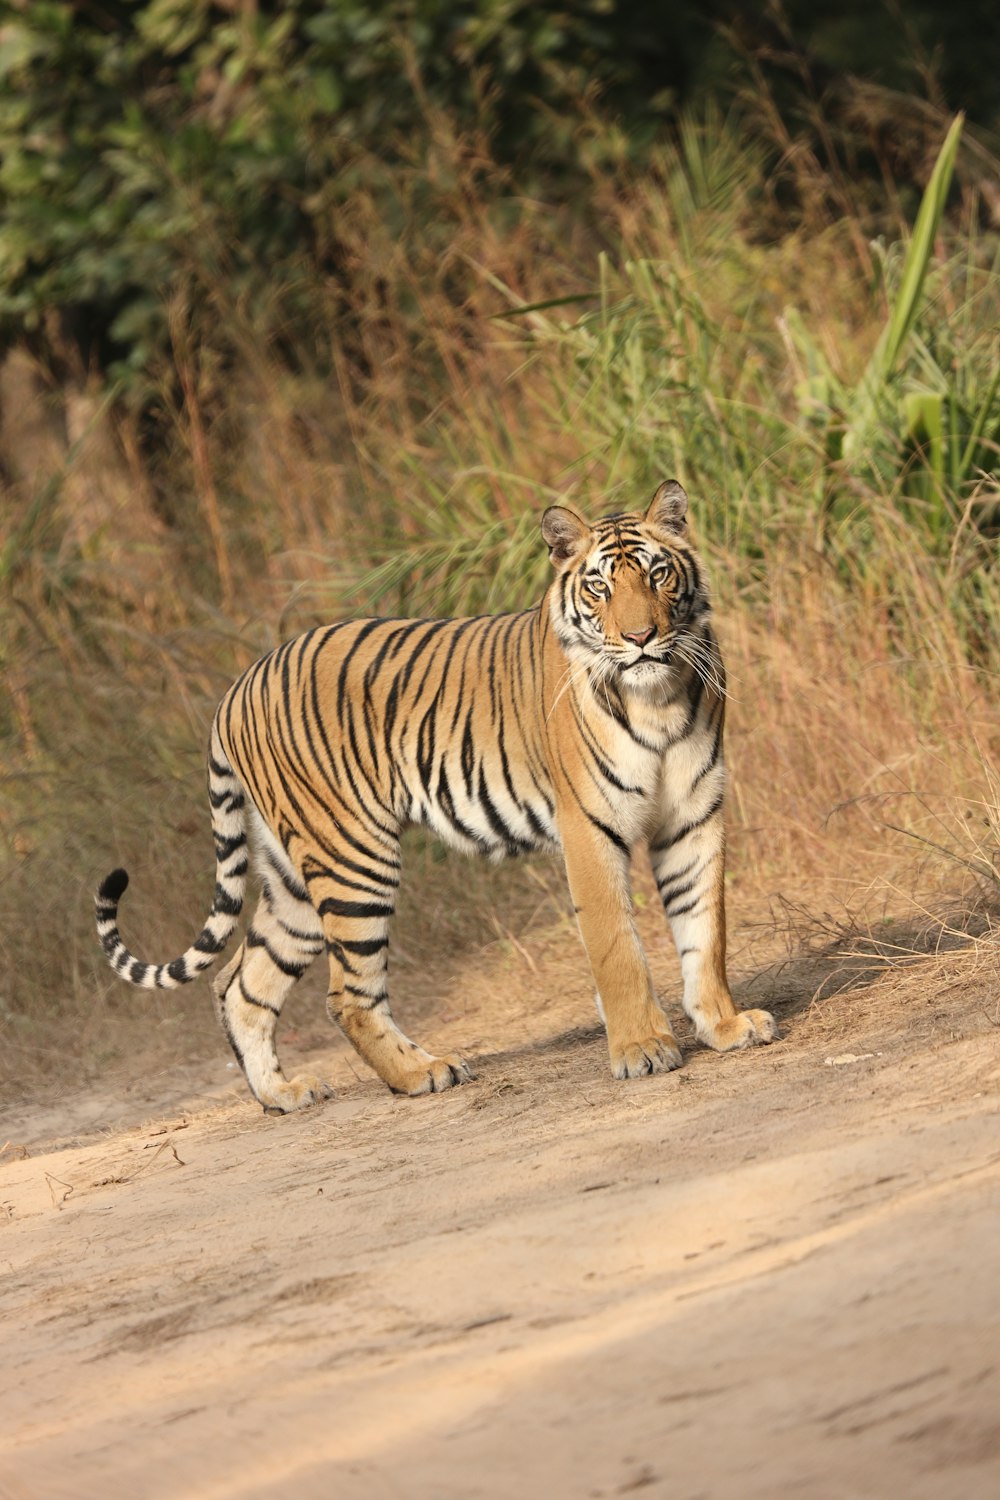 Un tigre caminando por un camino de tierra